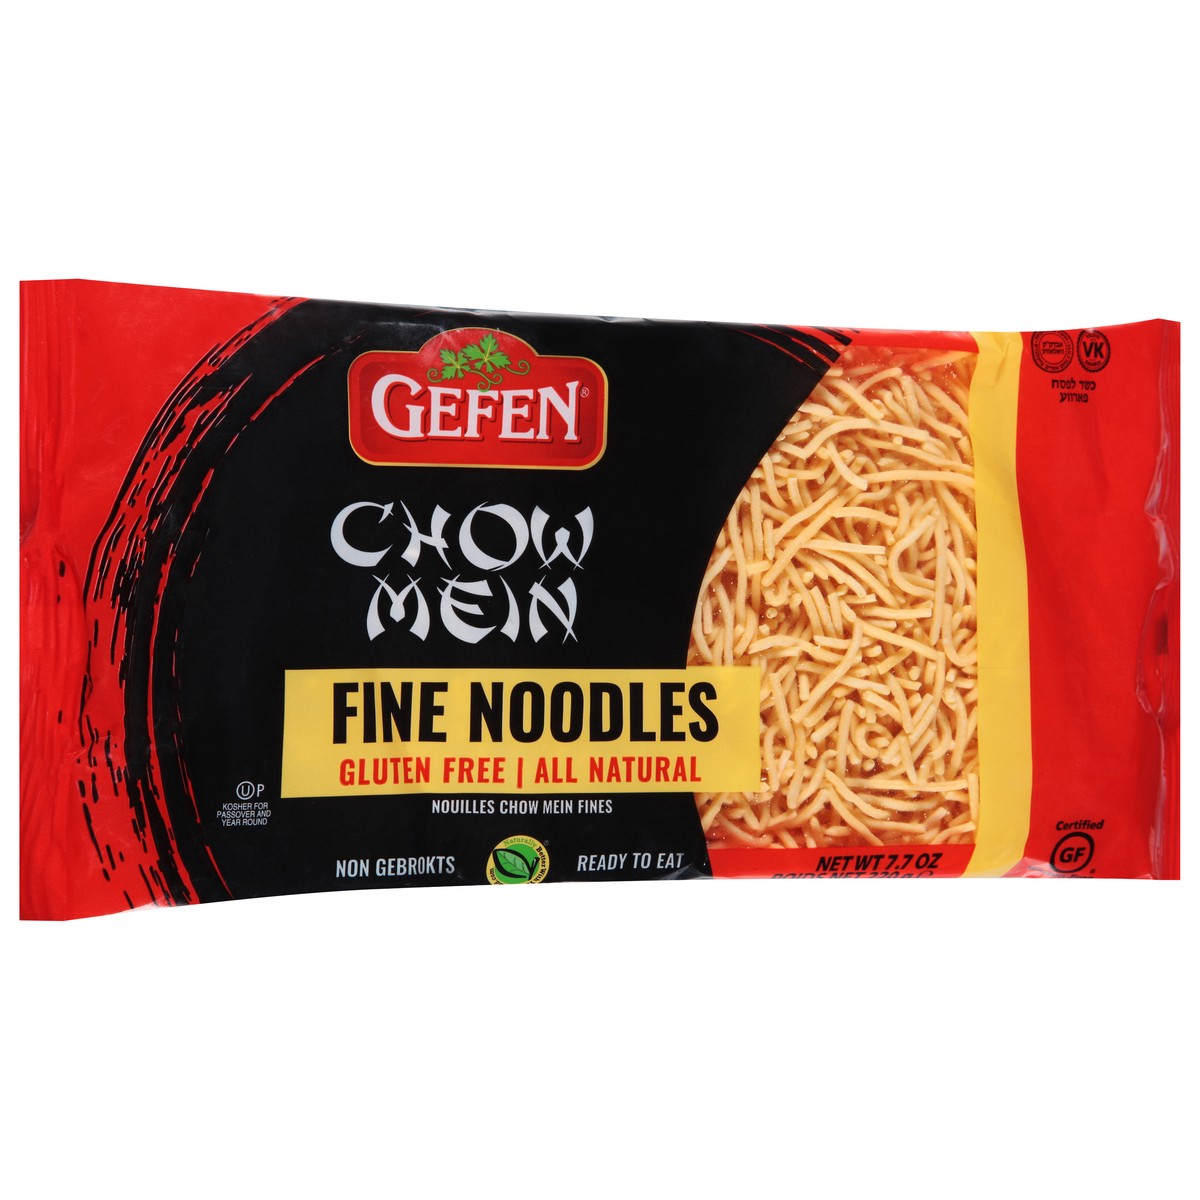 slide 2 of 9, Gefen Chow Mein Fine Noodles, 8 oz